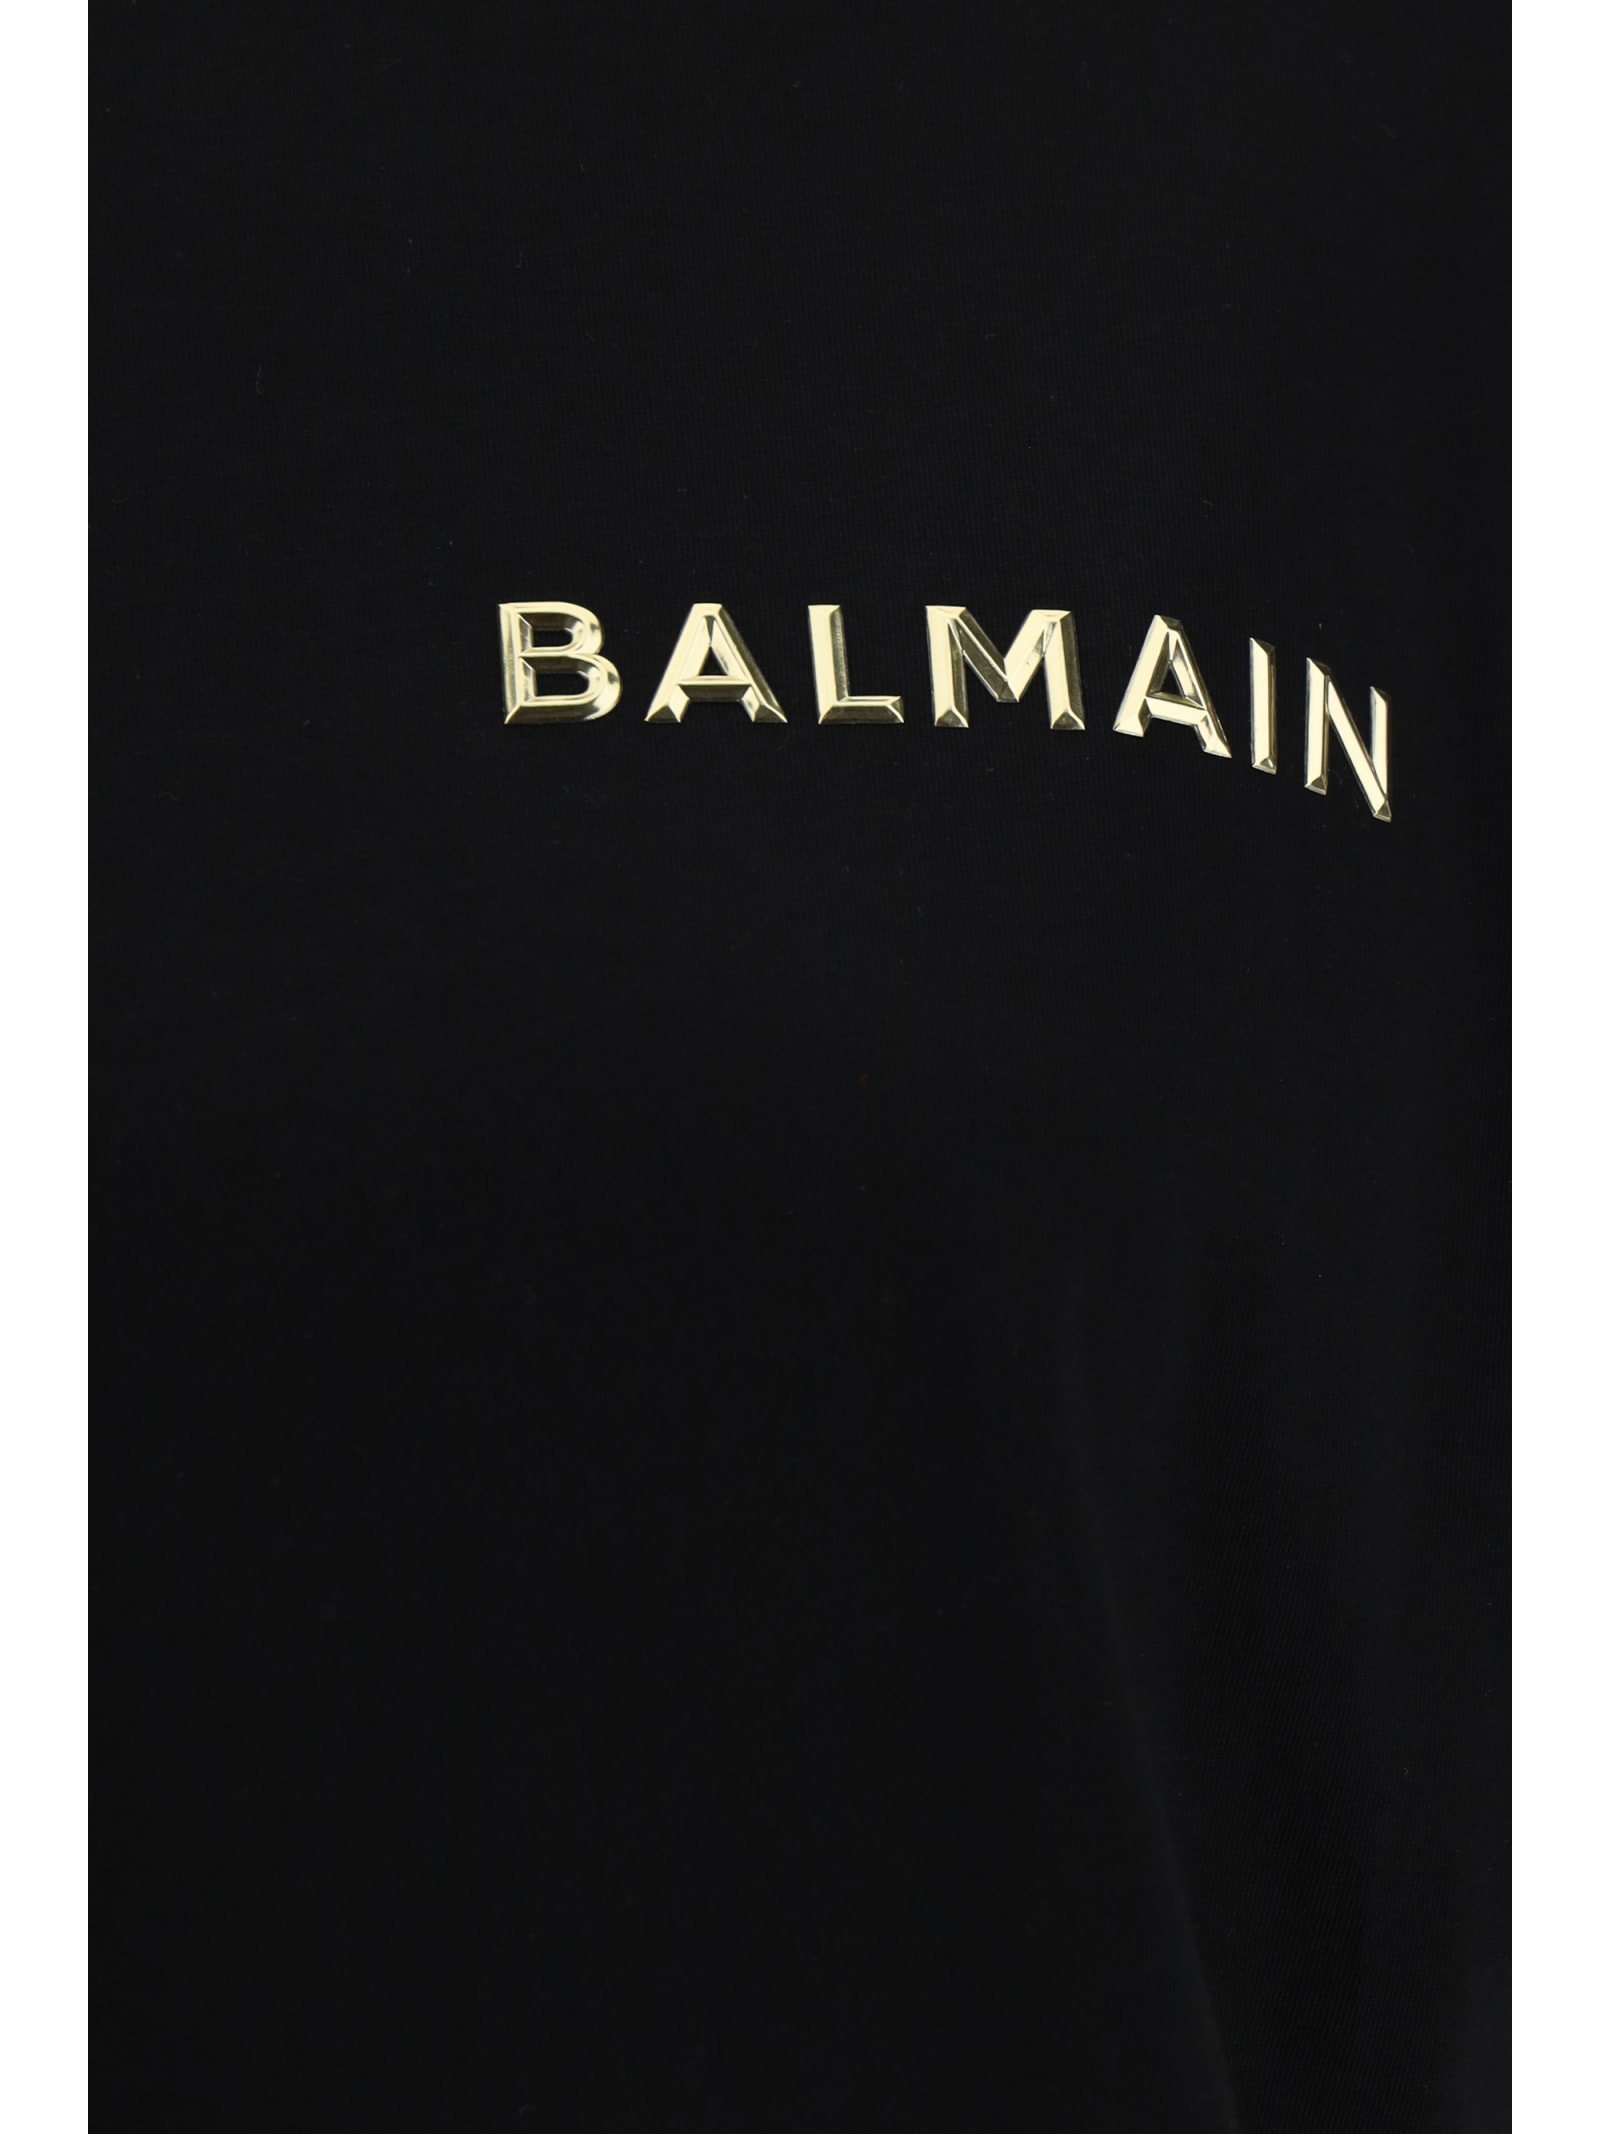 Shop Balmain T-shirt In Ead Noir Or